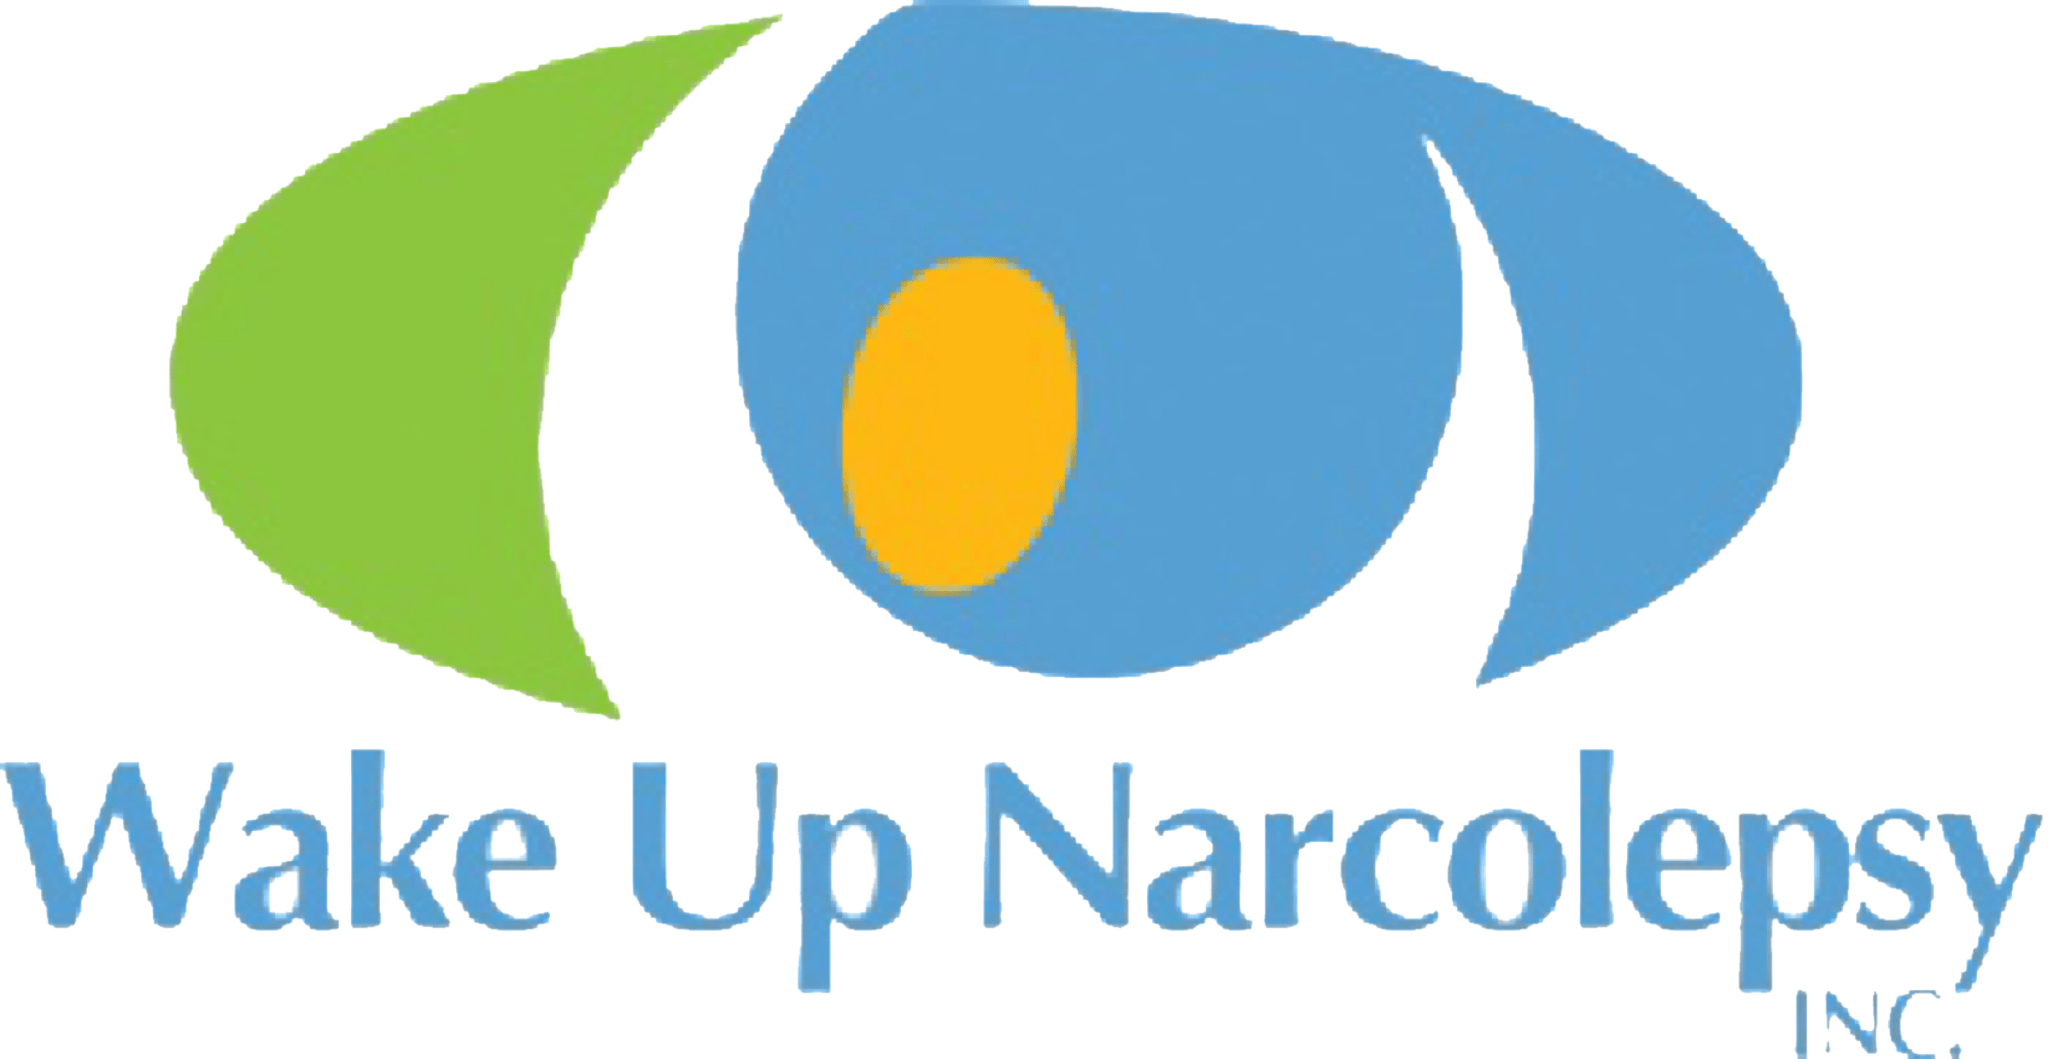 Wake Up Narcolepsy